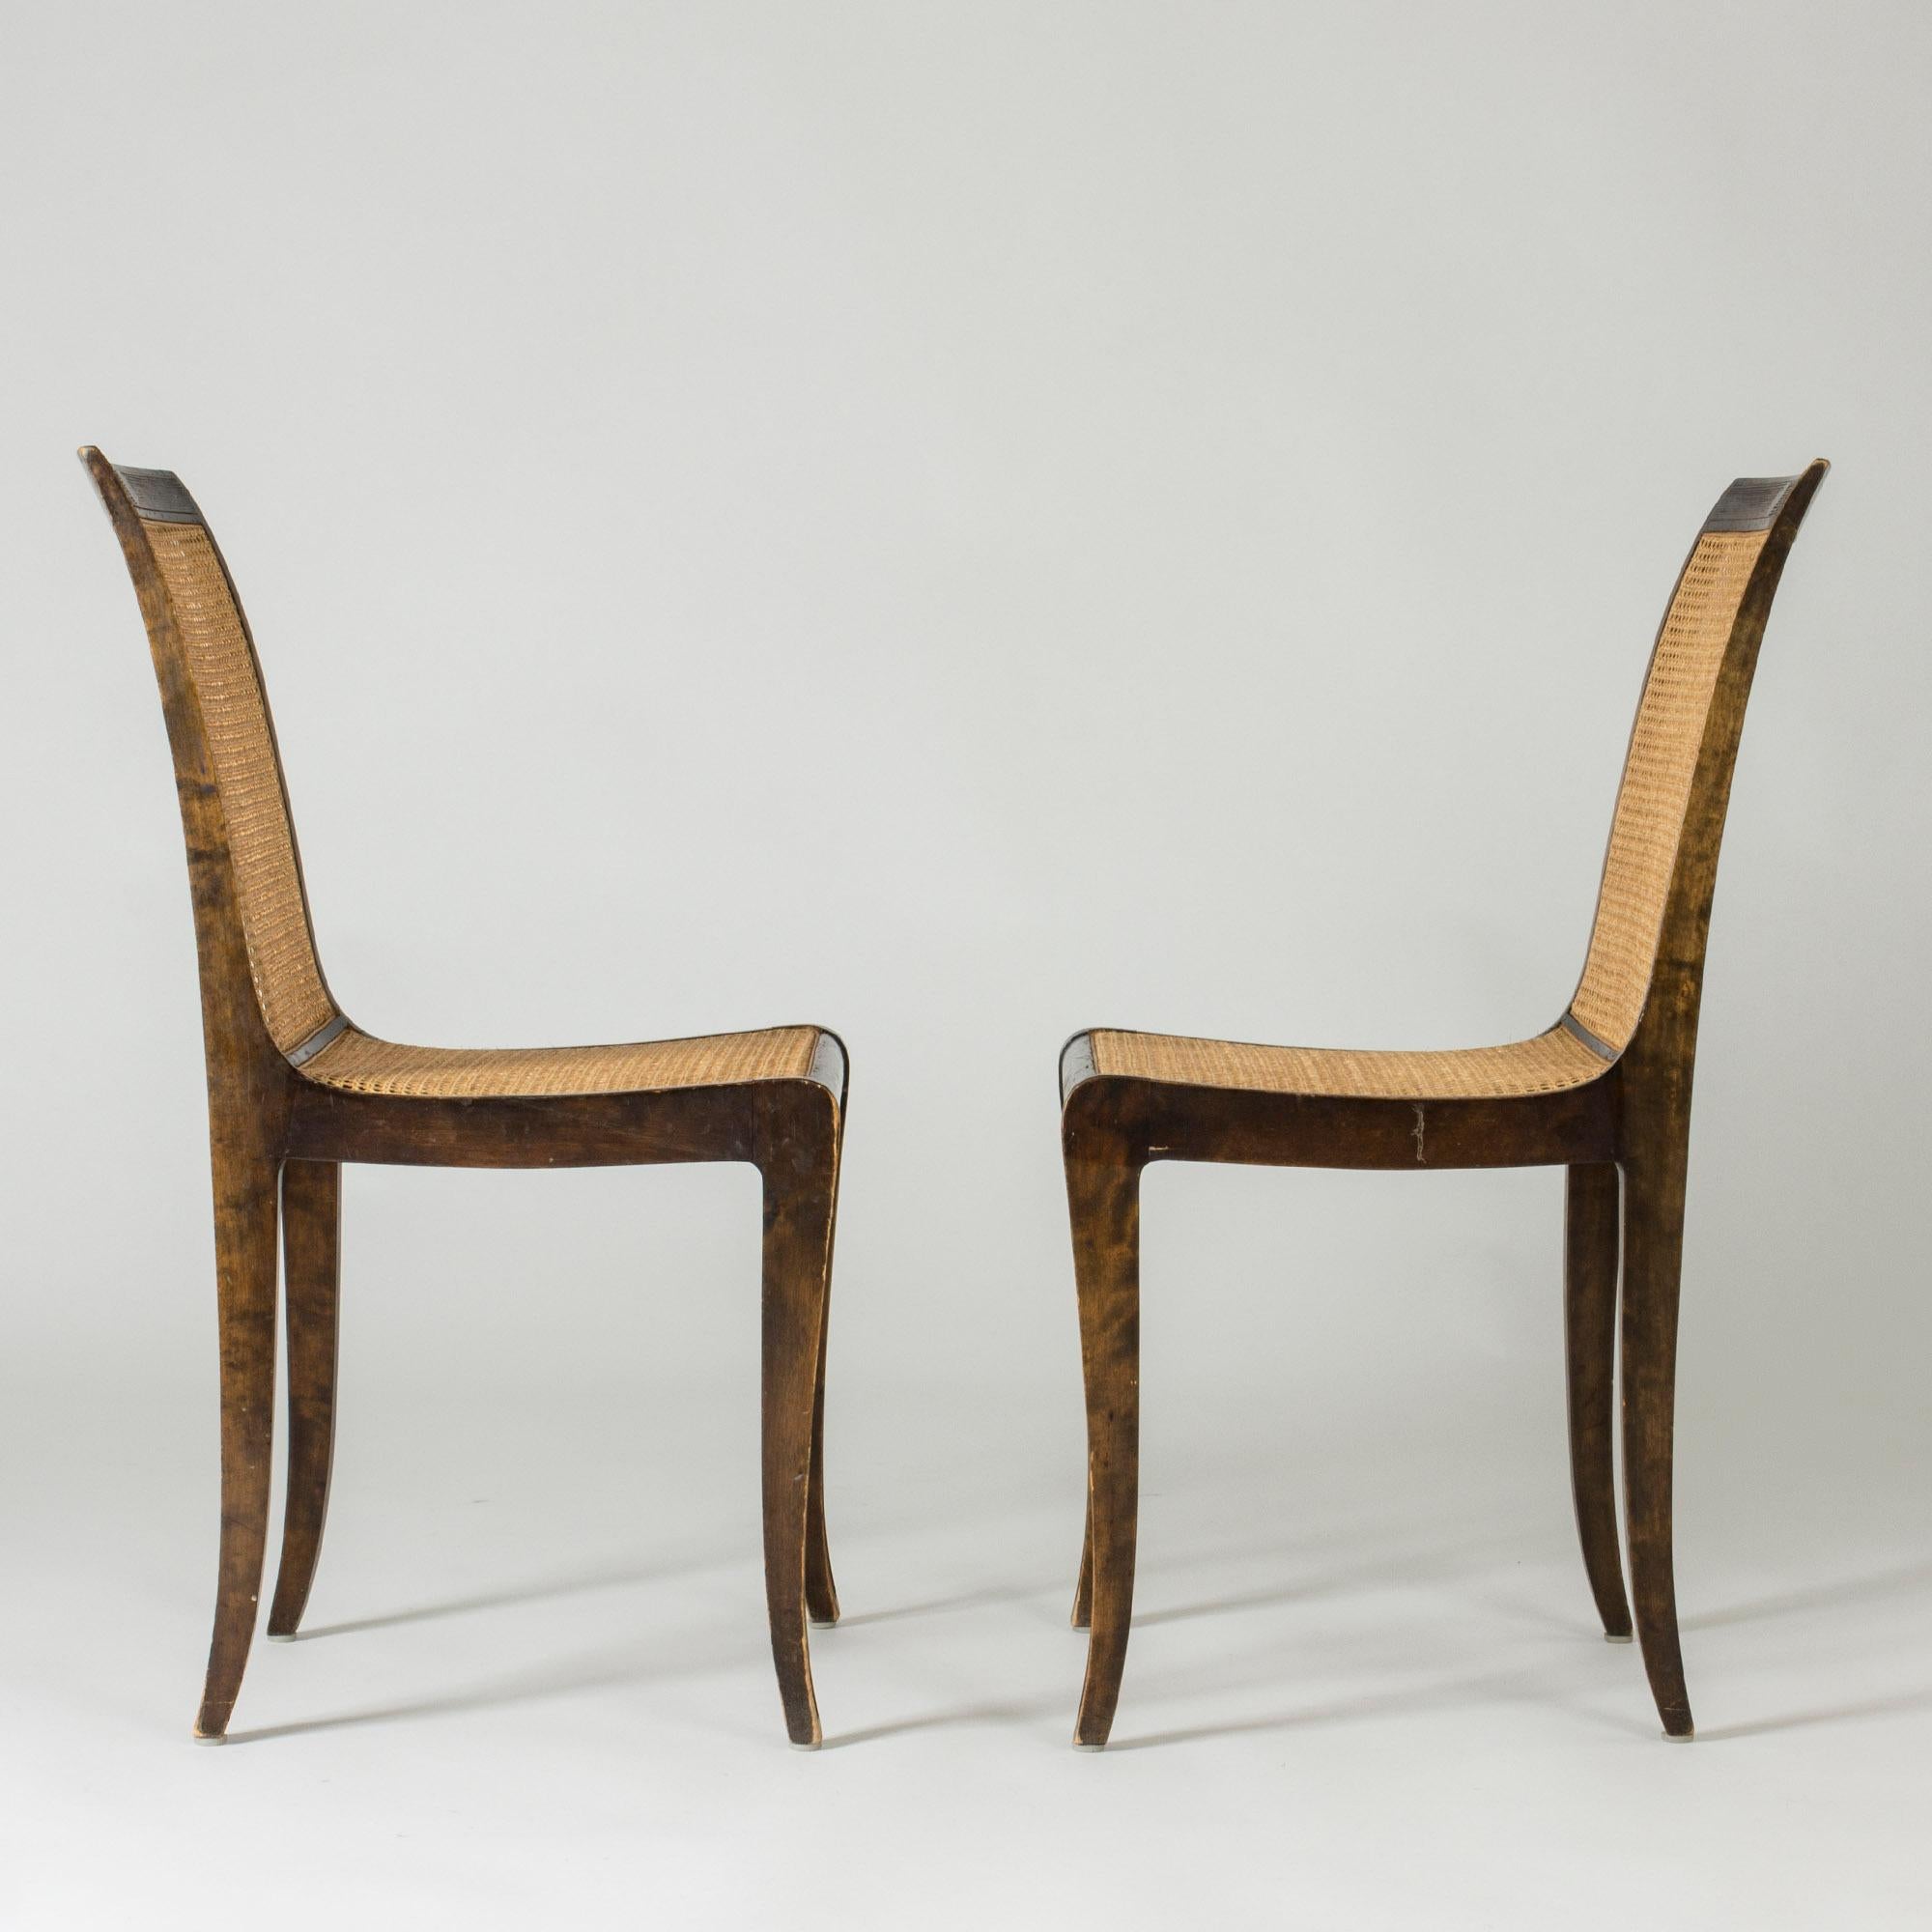 Paire de chaises d'appoint de Carl Malmsten. Fabriqué en bois teinté avec des dossiers en rotin, dont les couleurs contrastent élégamment. Des lignes fluides et une expression légère.